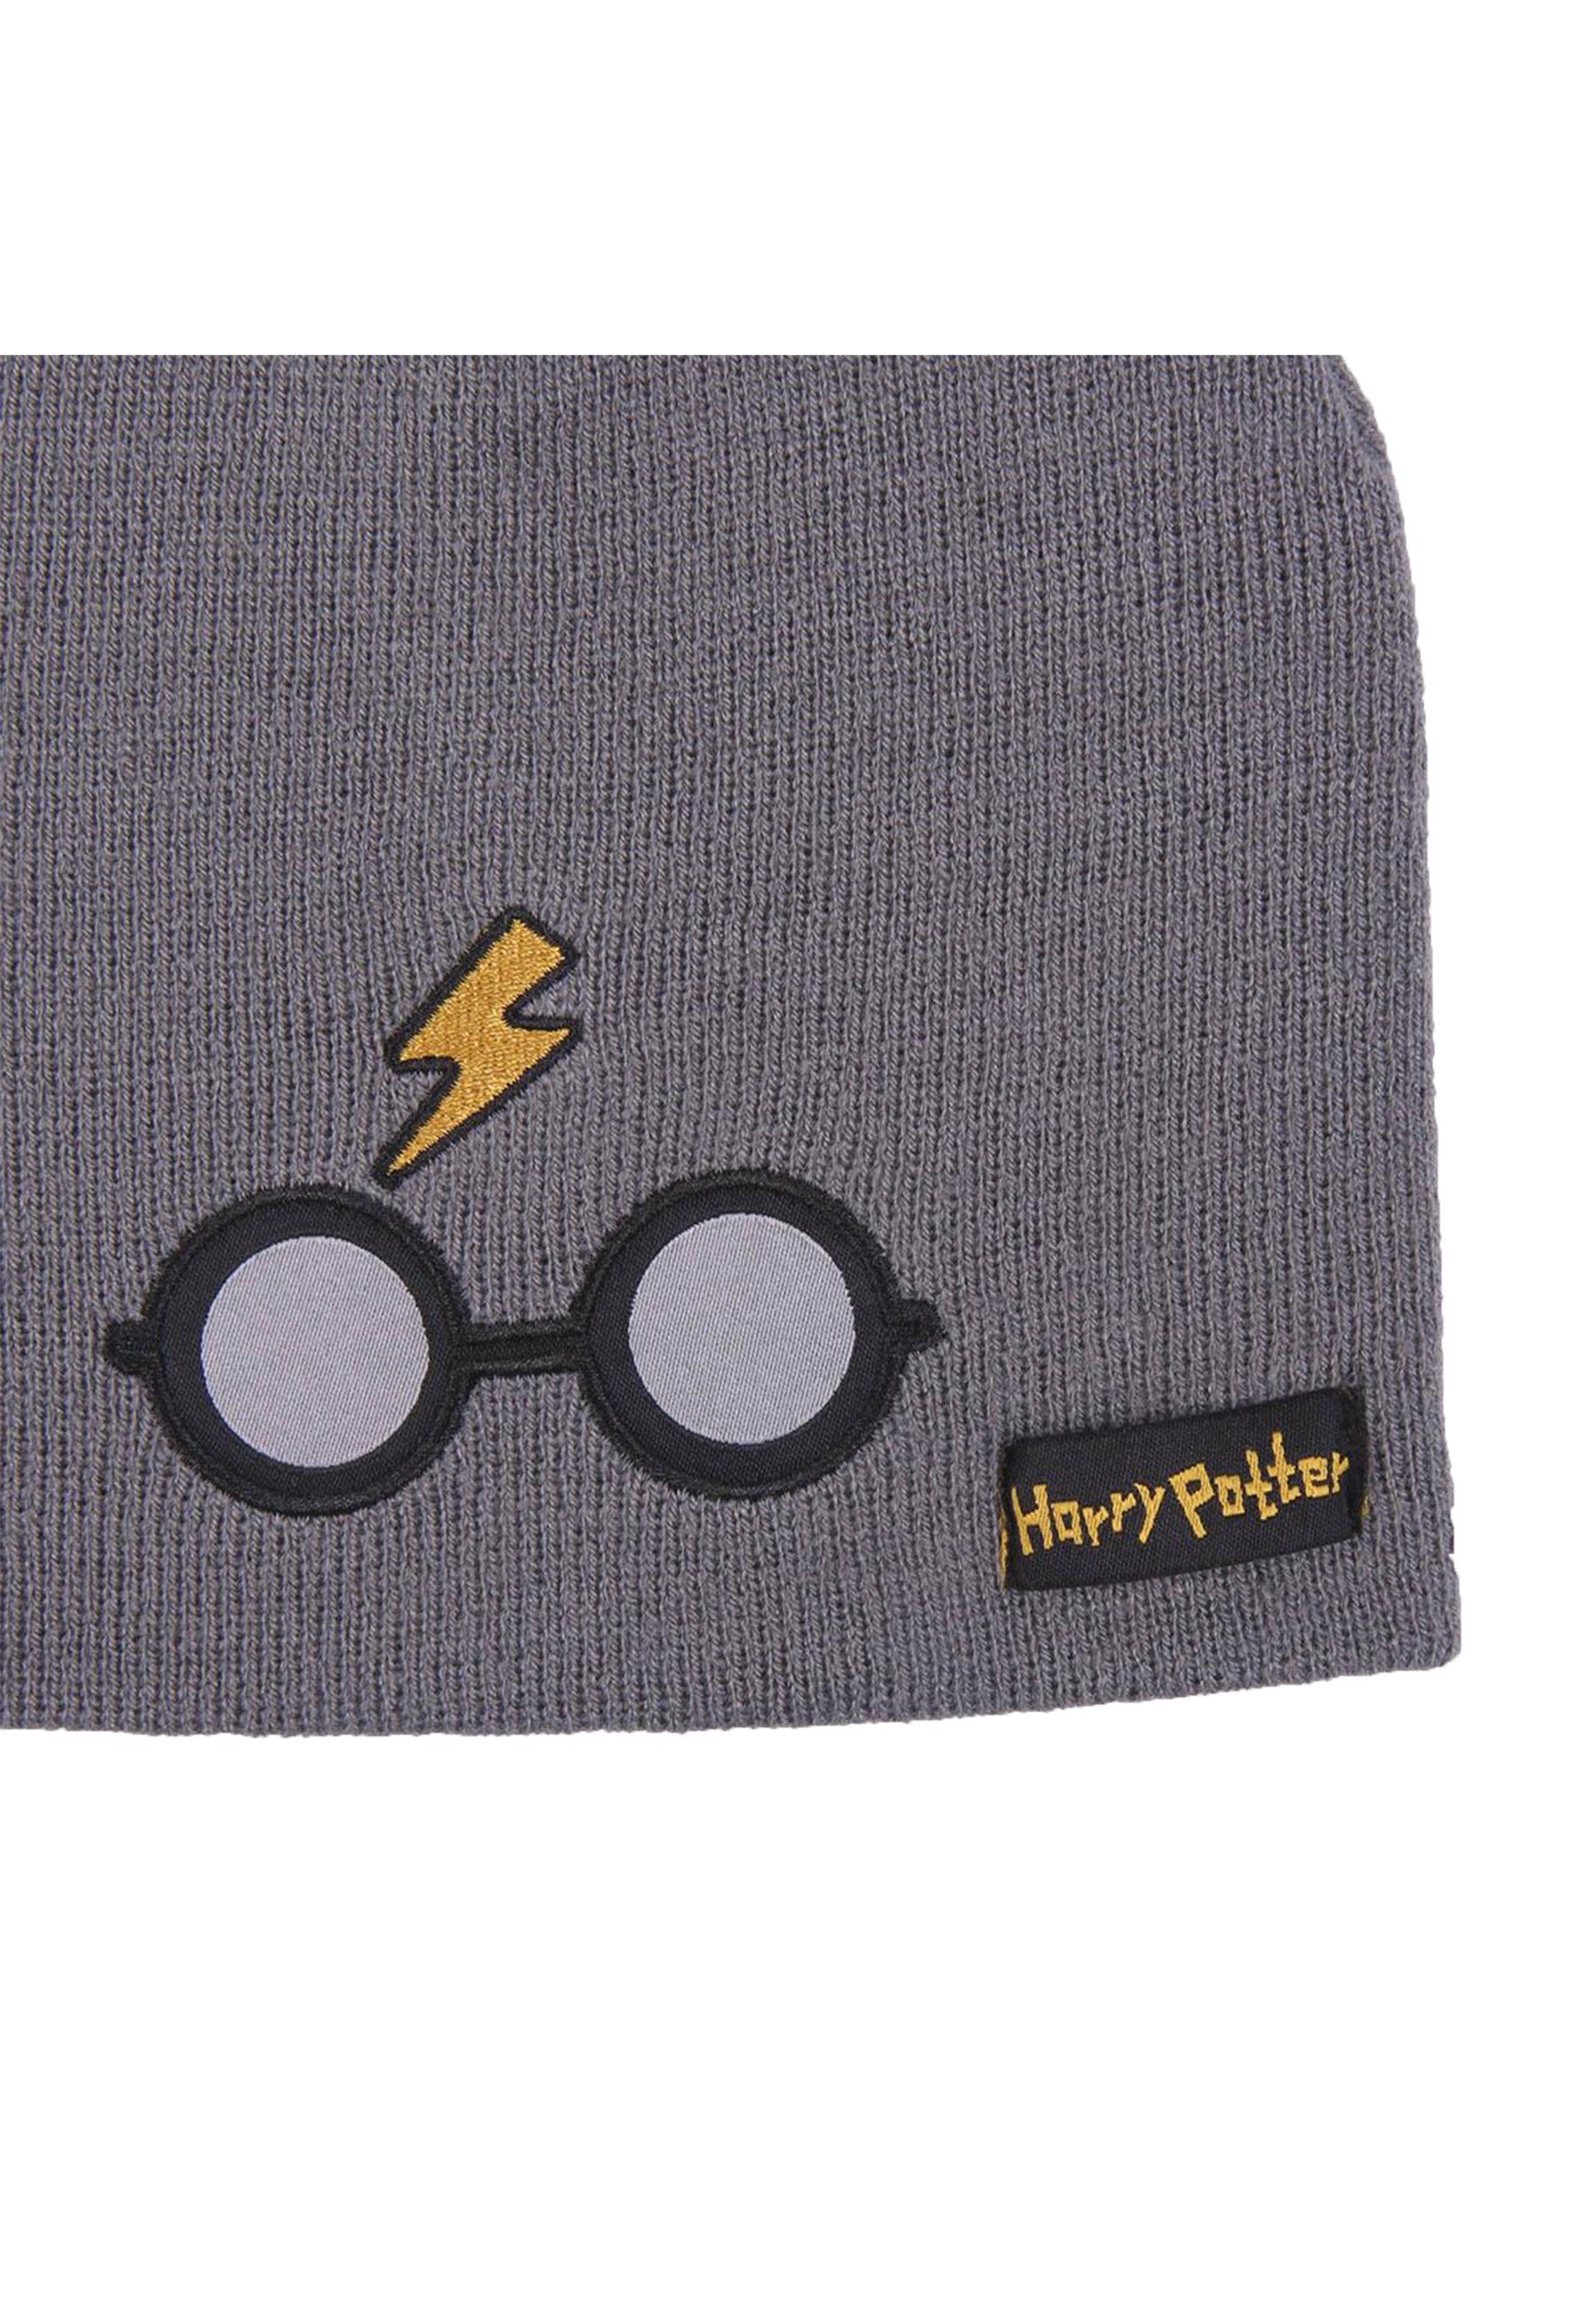 Harry Potter Jungen Winter-Beanie-Mütze Kinder Beanie Strickmützte